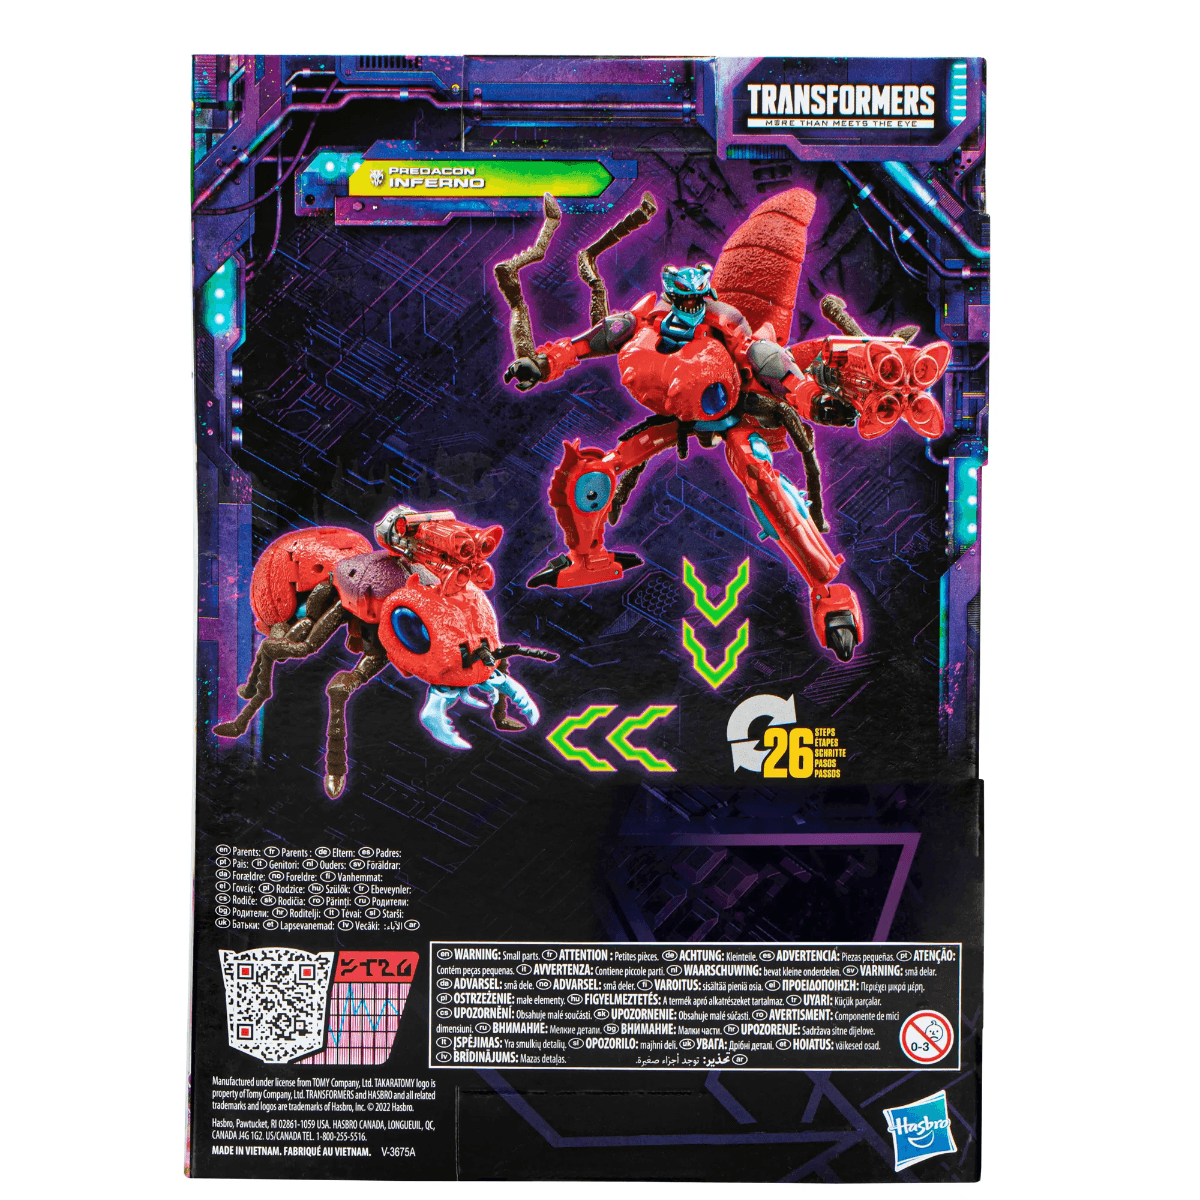 Transformers Generations Legacy Voyager Predacon Inferno  Hasbro Titan Pop Culture